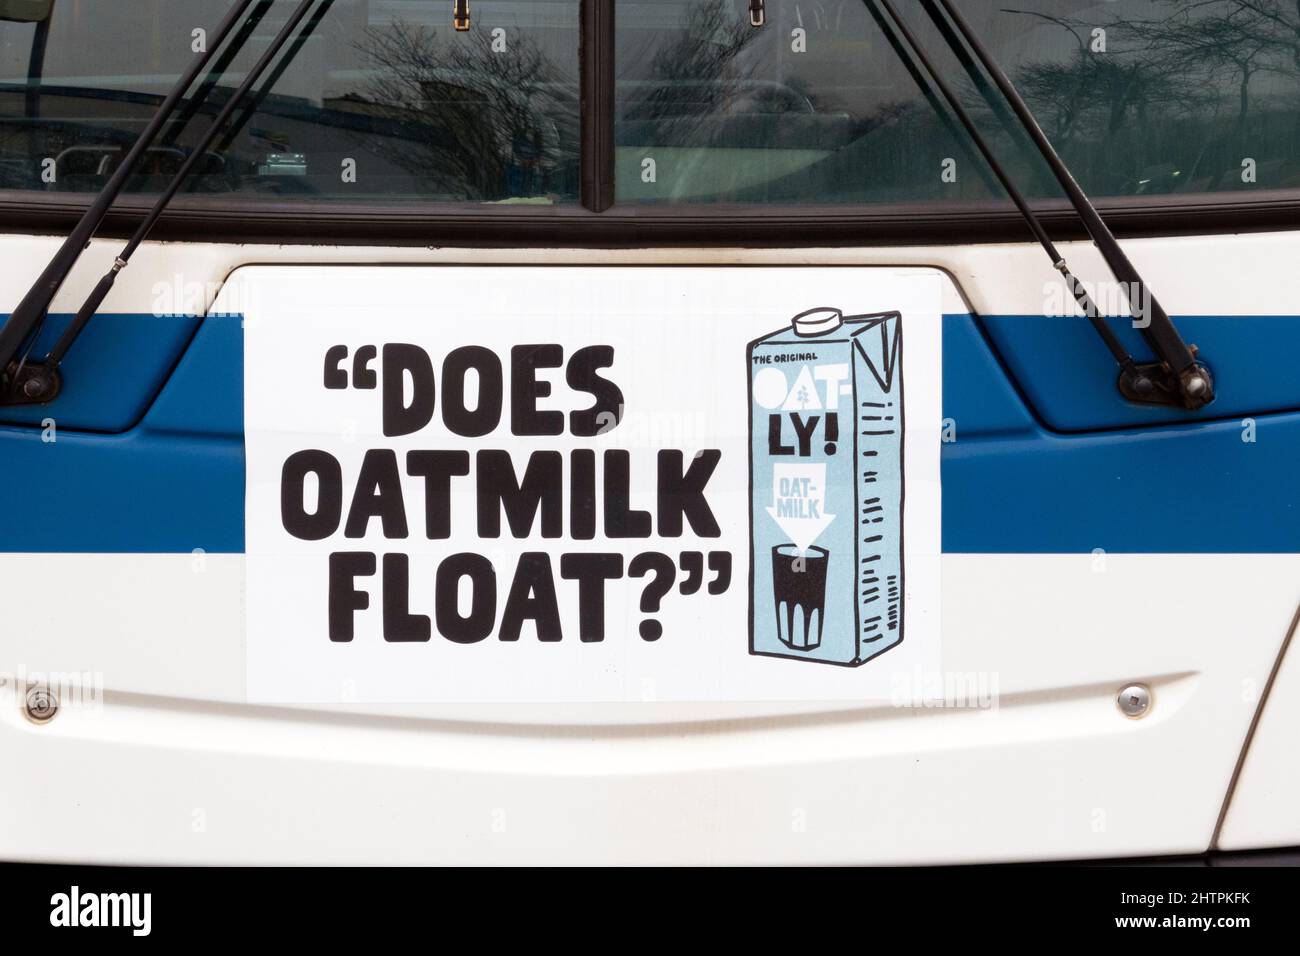 SCHWIMMT OAT-MILCH? Eine witzige, witzige, respektlos erscheinende Oatly Hafermilch-Anzeige auf der Vorderseite eines New York City-Busses in Queens New York City. Stockfoto